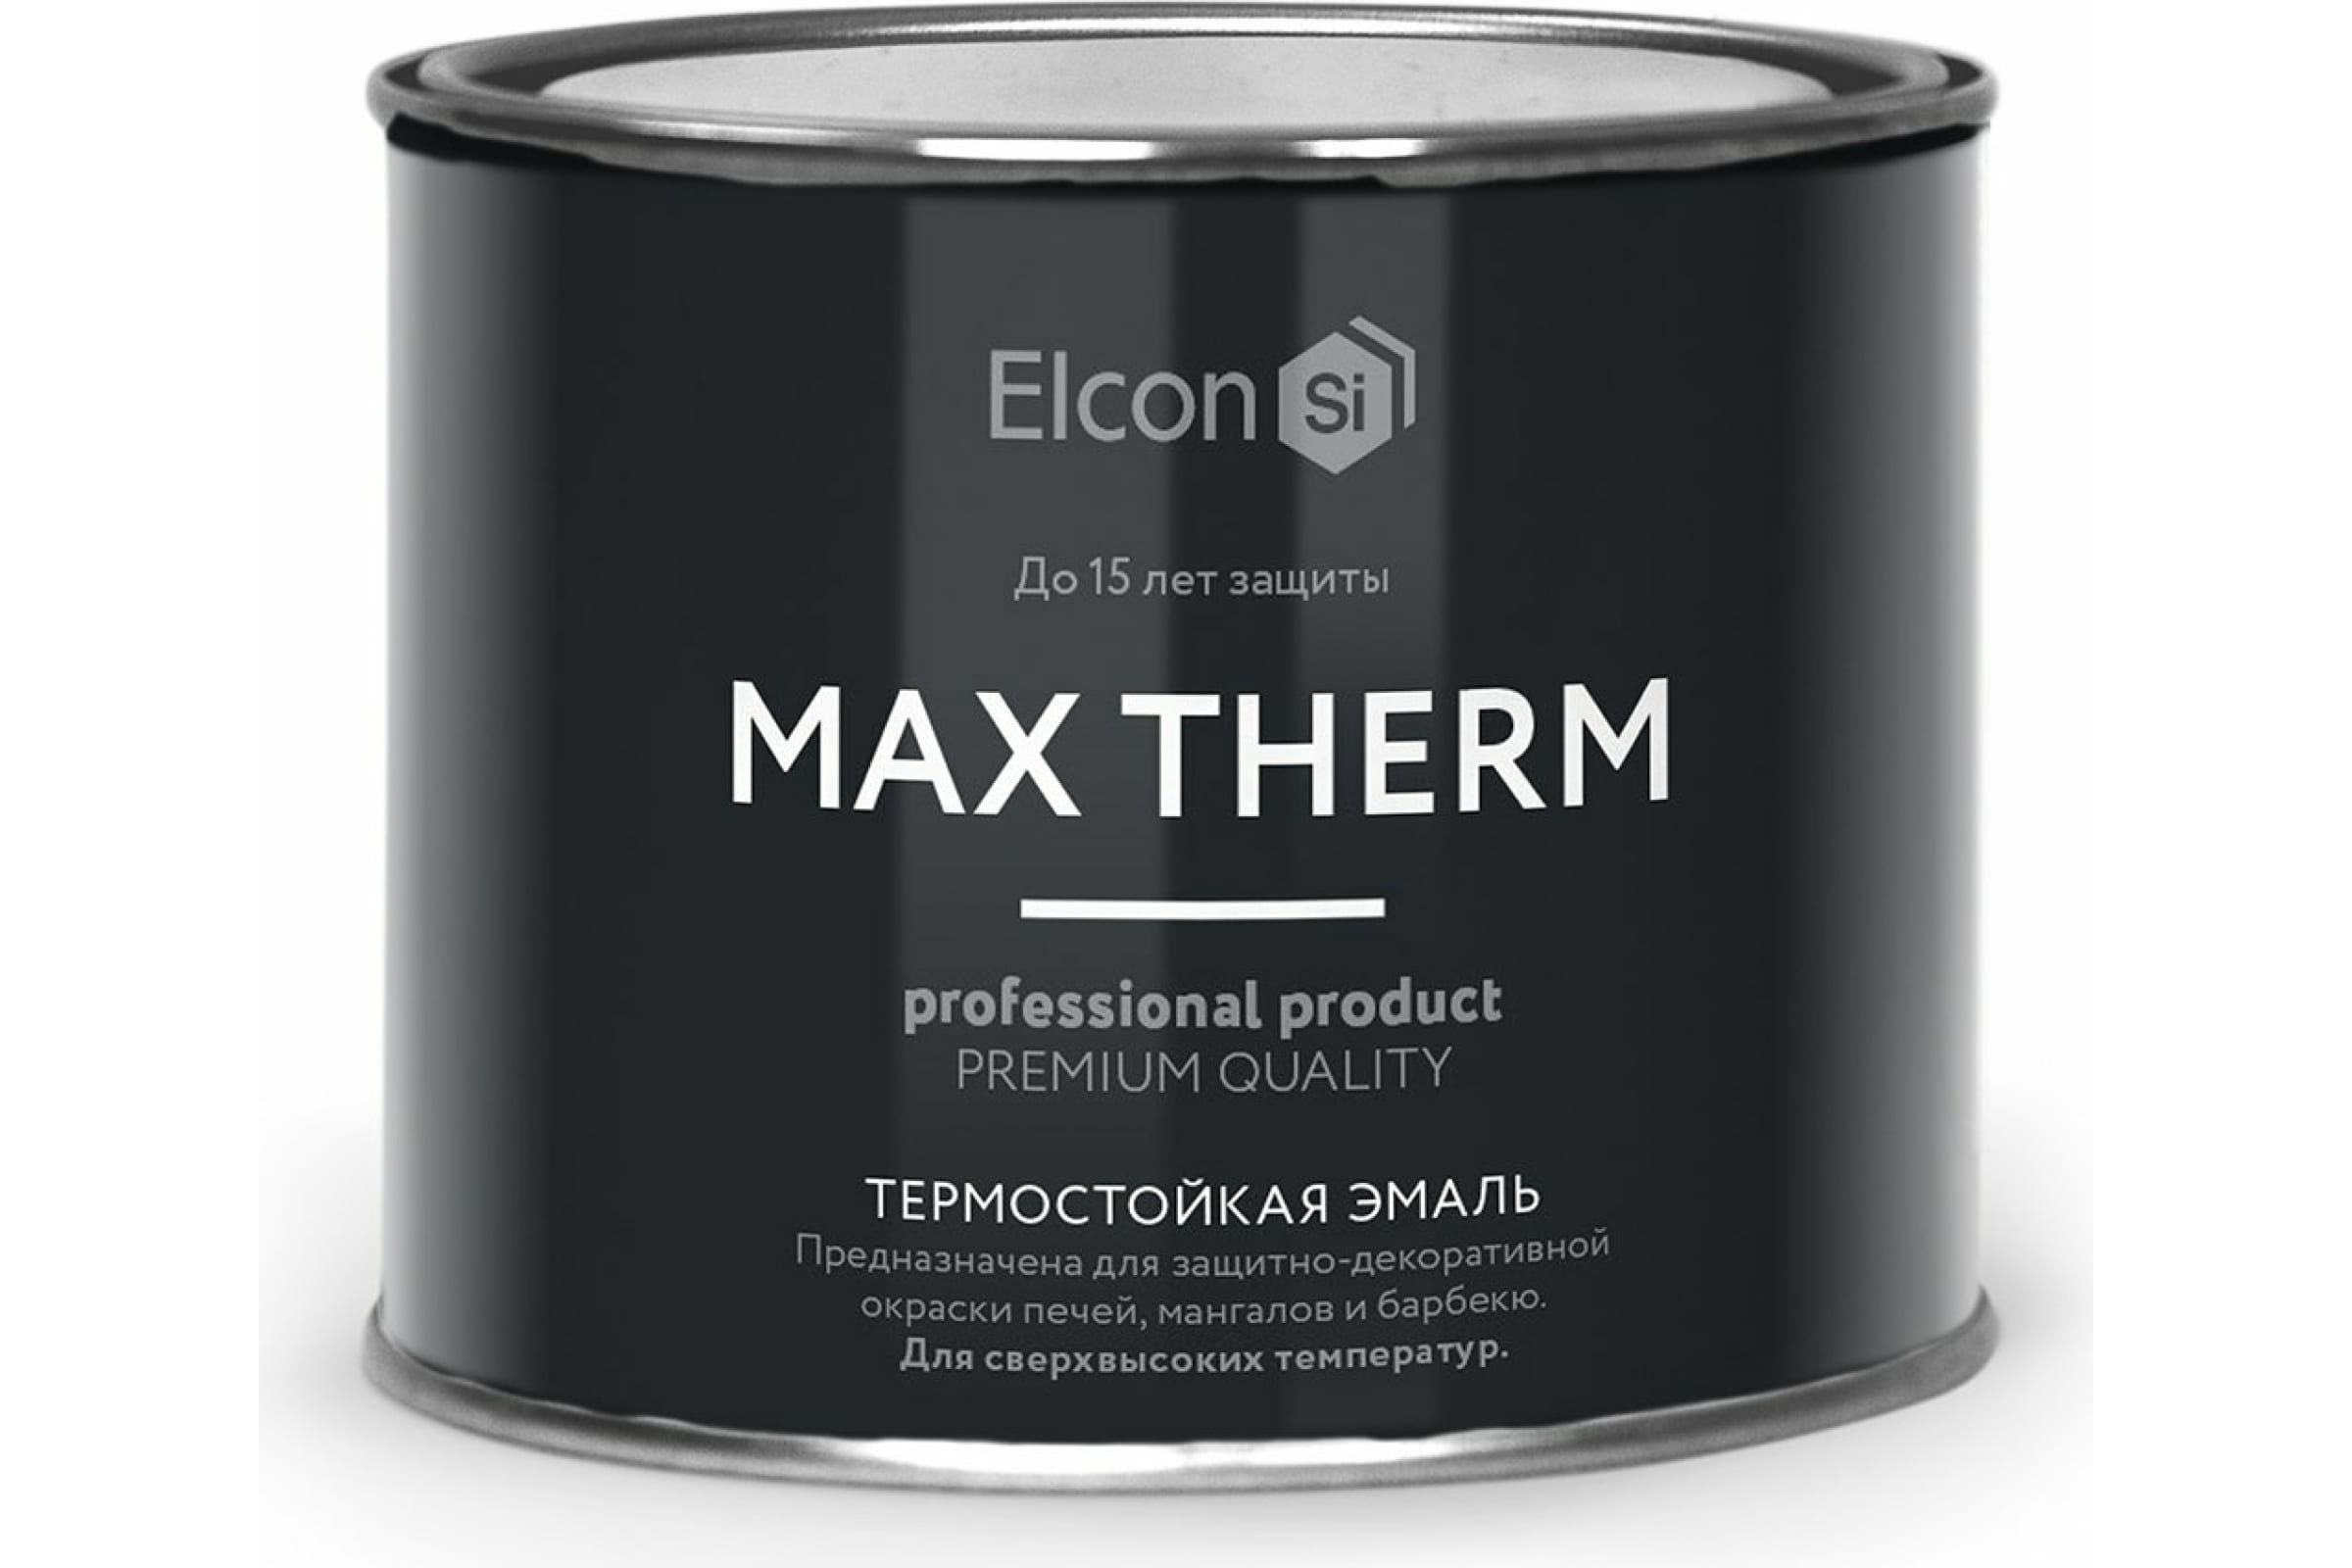 Термостойкая антикоррозионная эмаль Elcon Max Therm до 400 градусов, 0,4 л, ярко-красная термостойкая антикоррозионная эмаль elcon max therm до 700 градусов 0 4 л серебристая